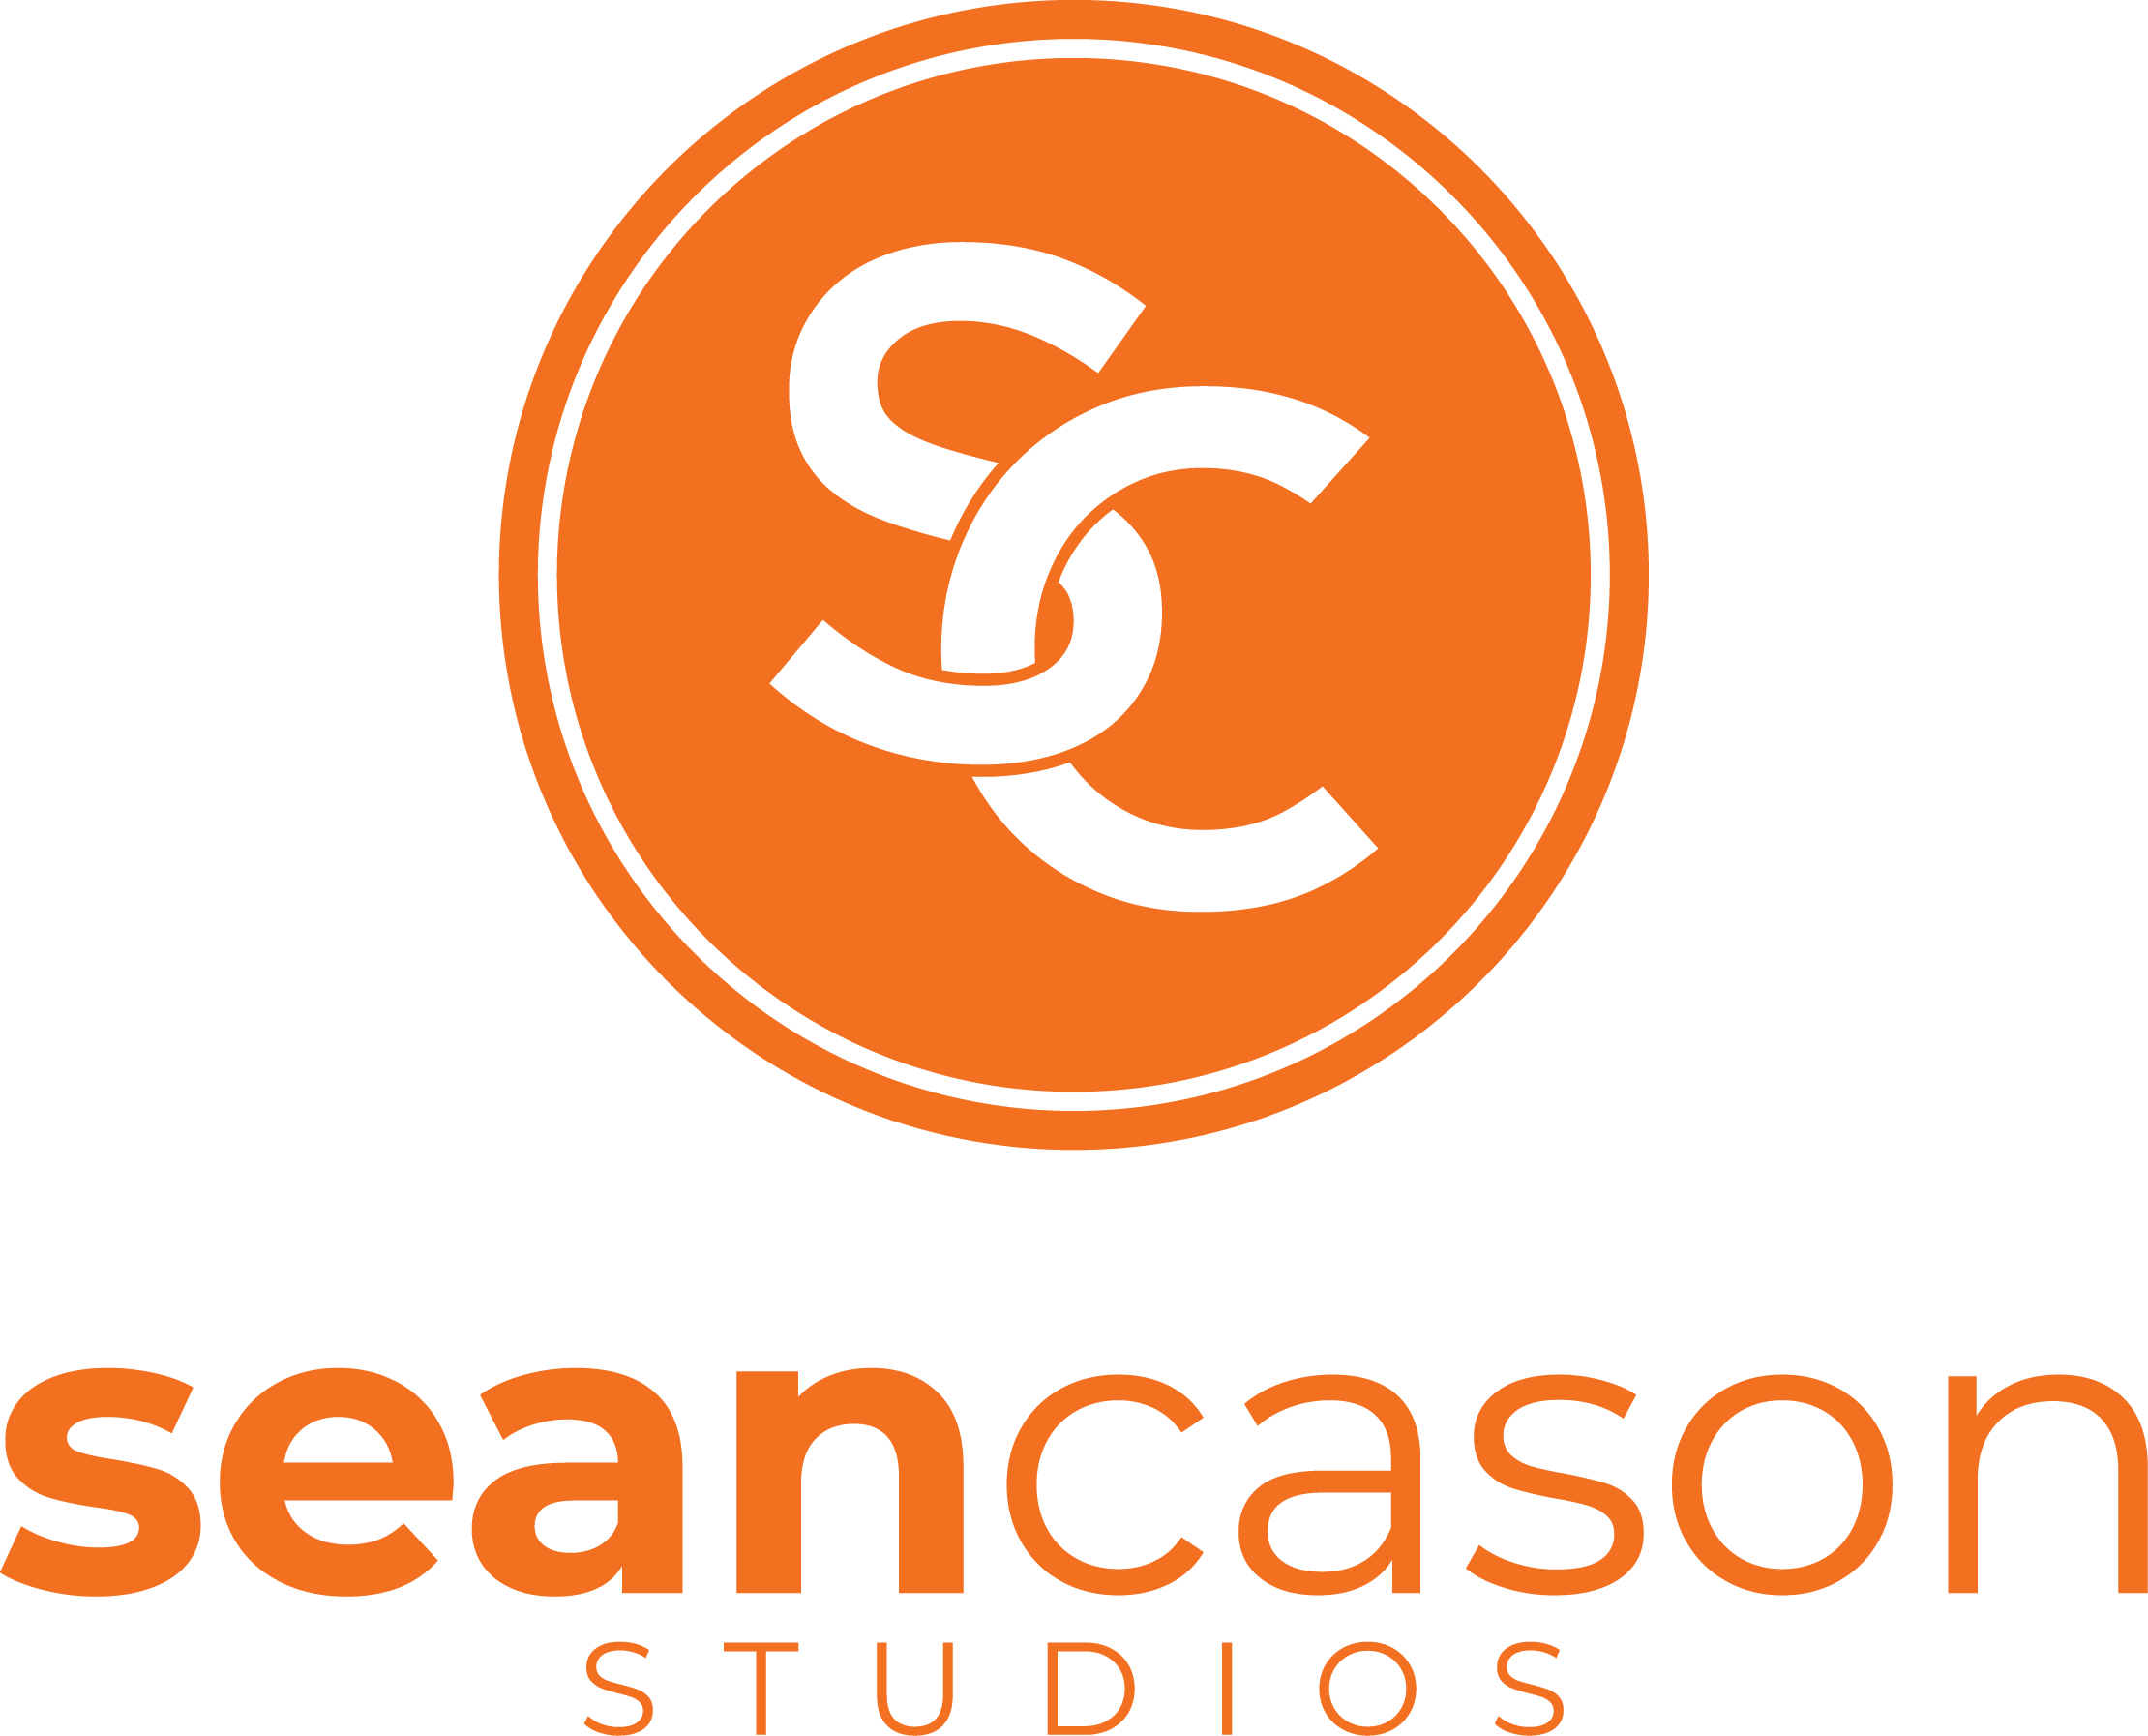 Sean Cason Studios